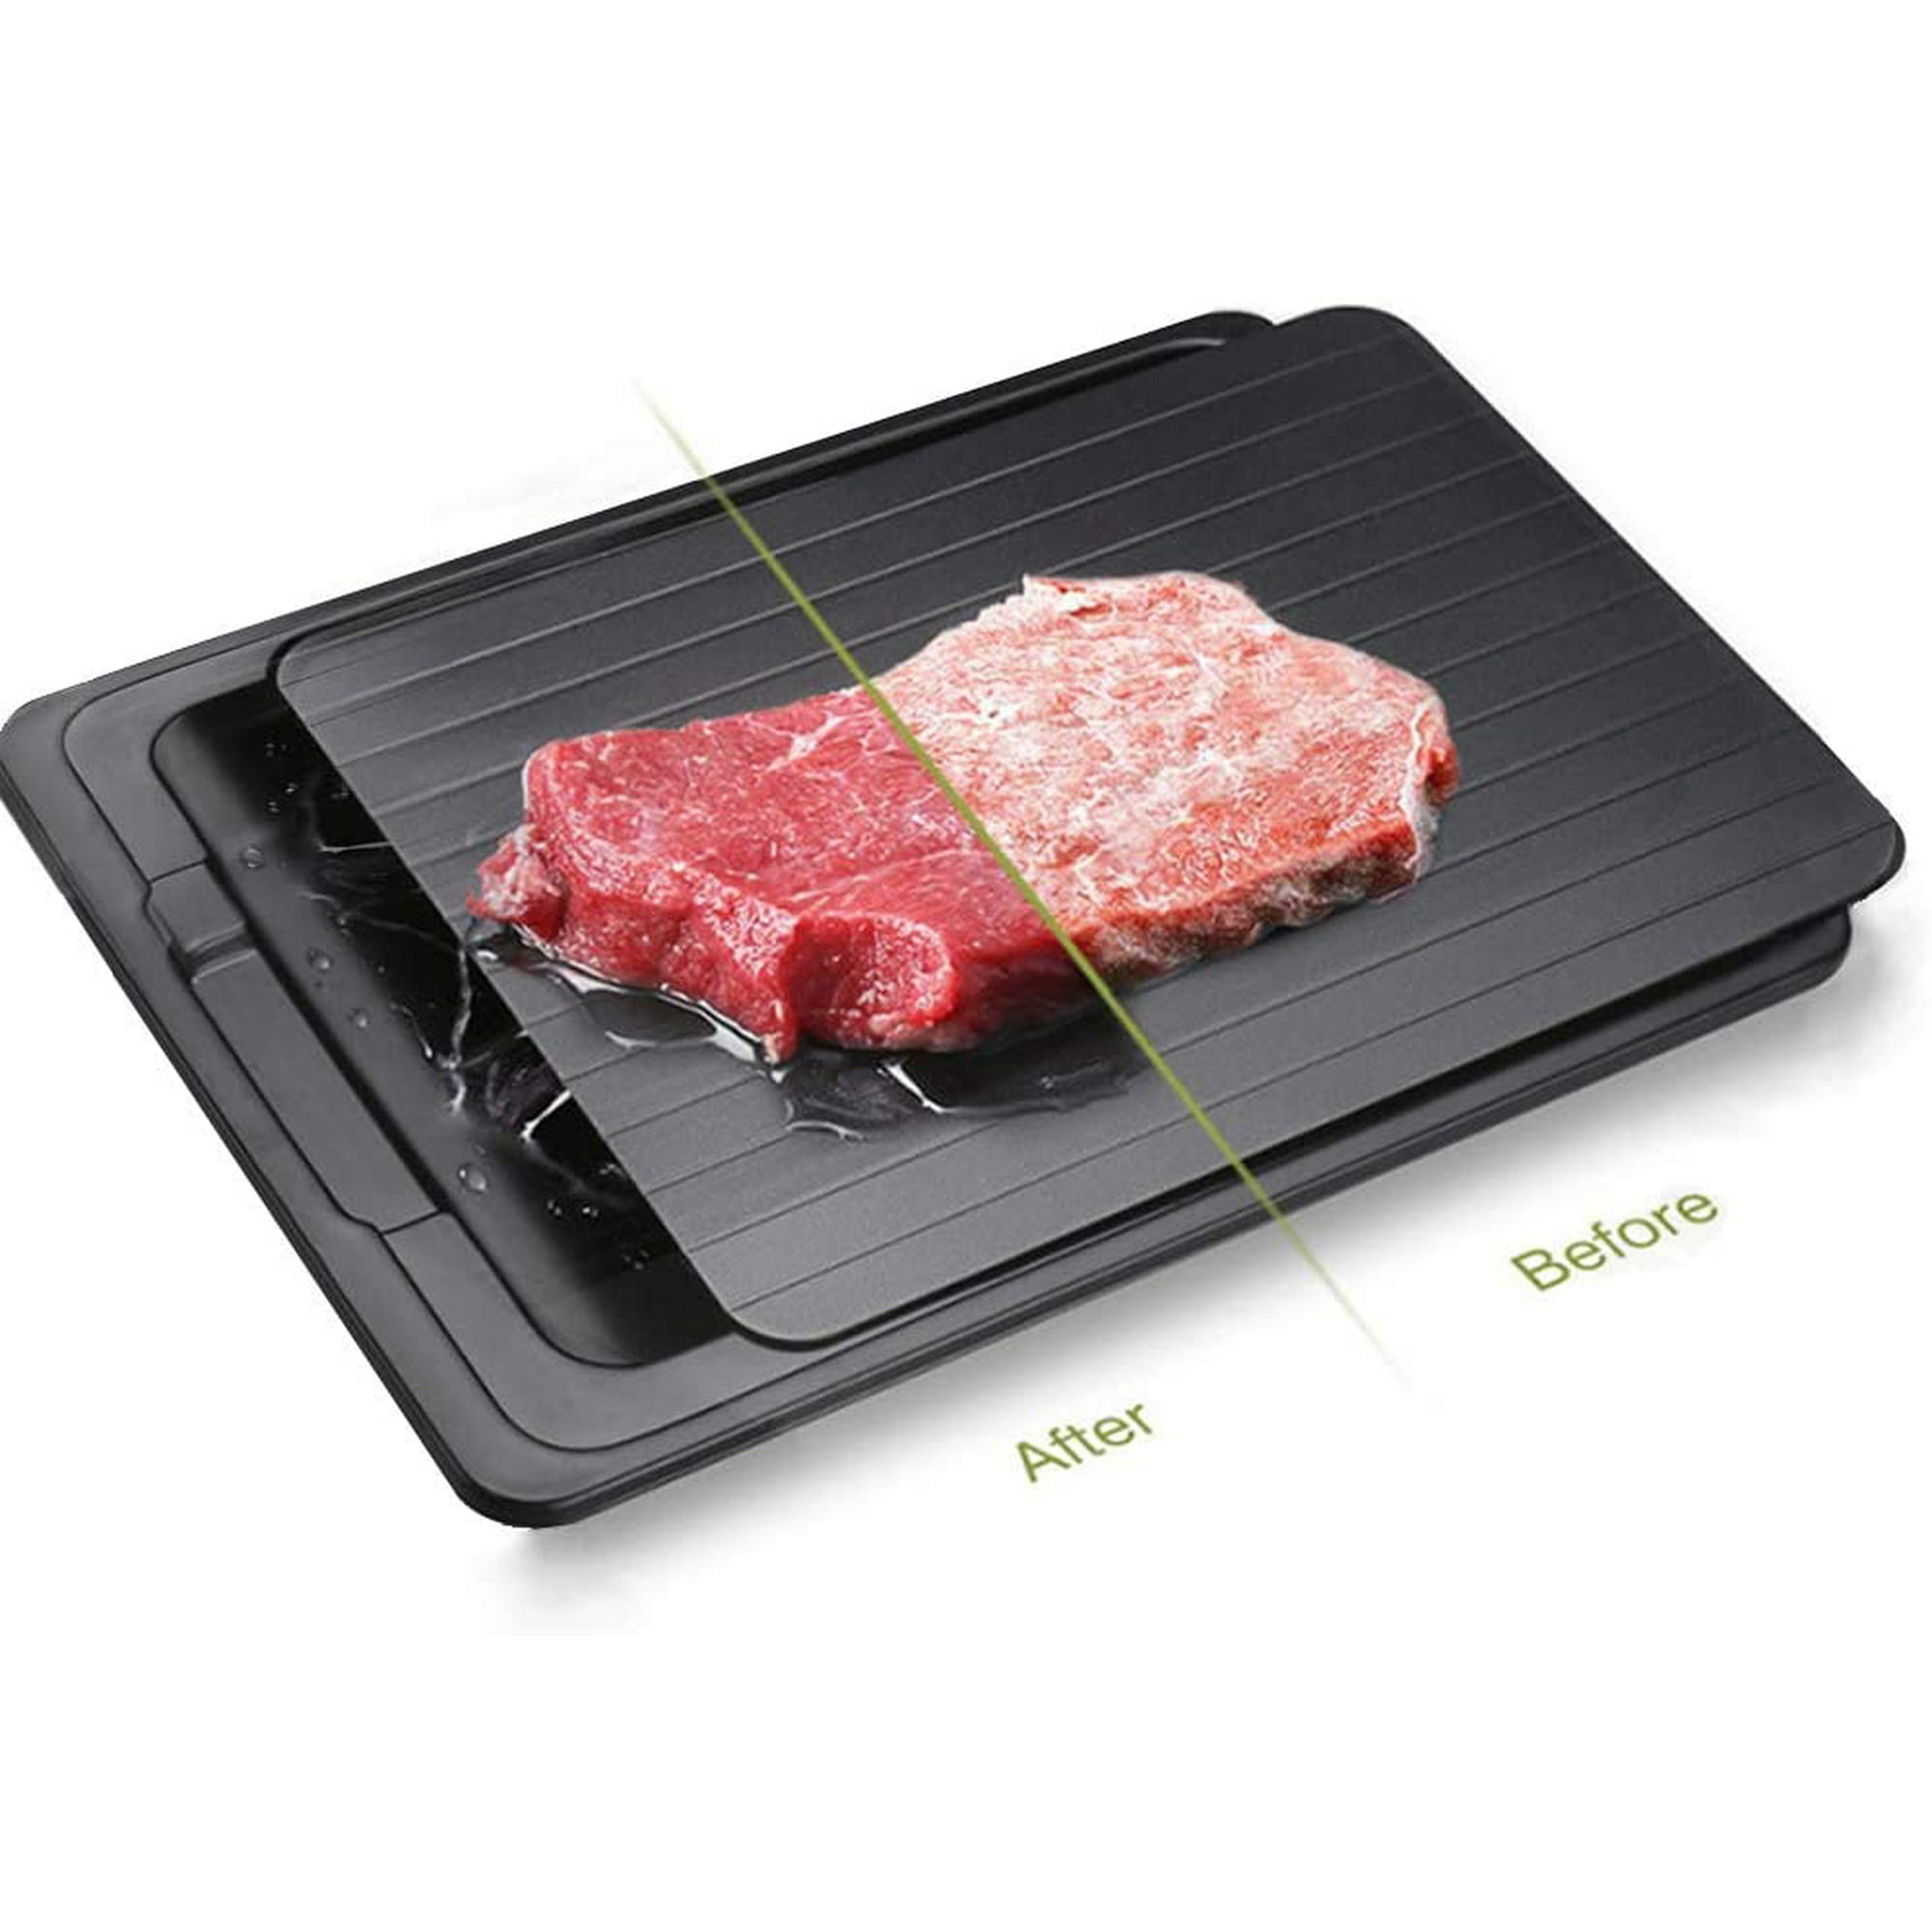 Tabla de cortar de descongelación rápida, placa de carne, placa de  descongelación rápida y segura, placa de descongelación rápida utilizada  para